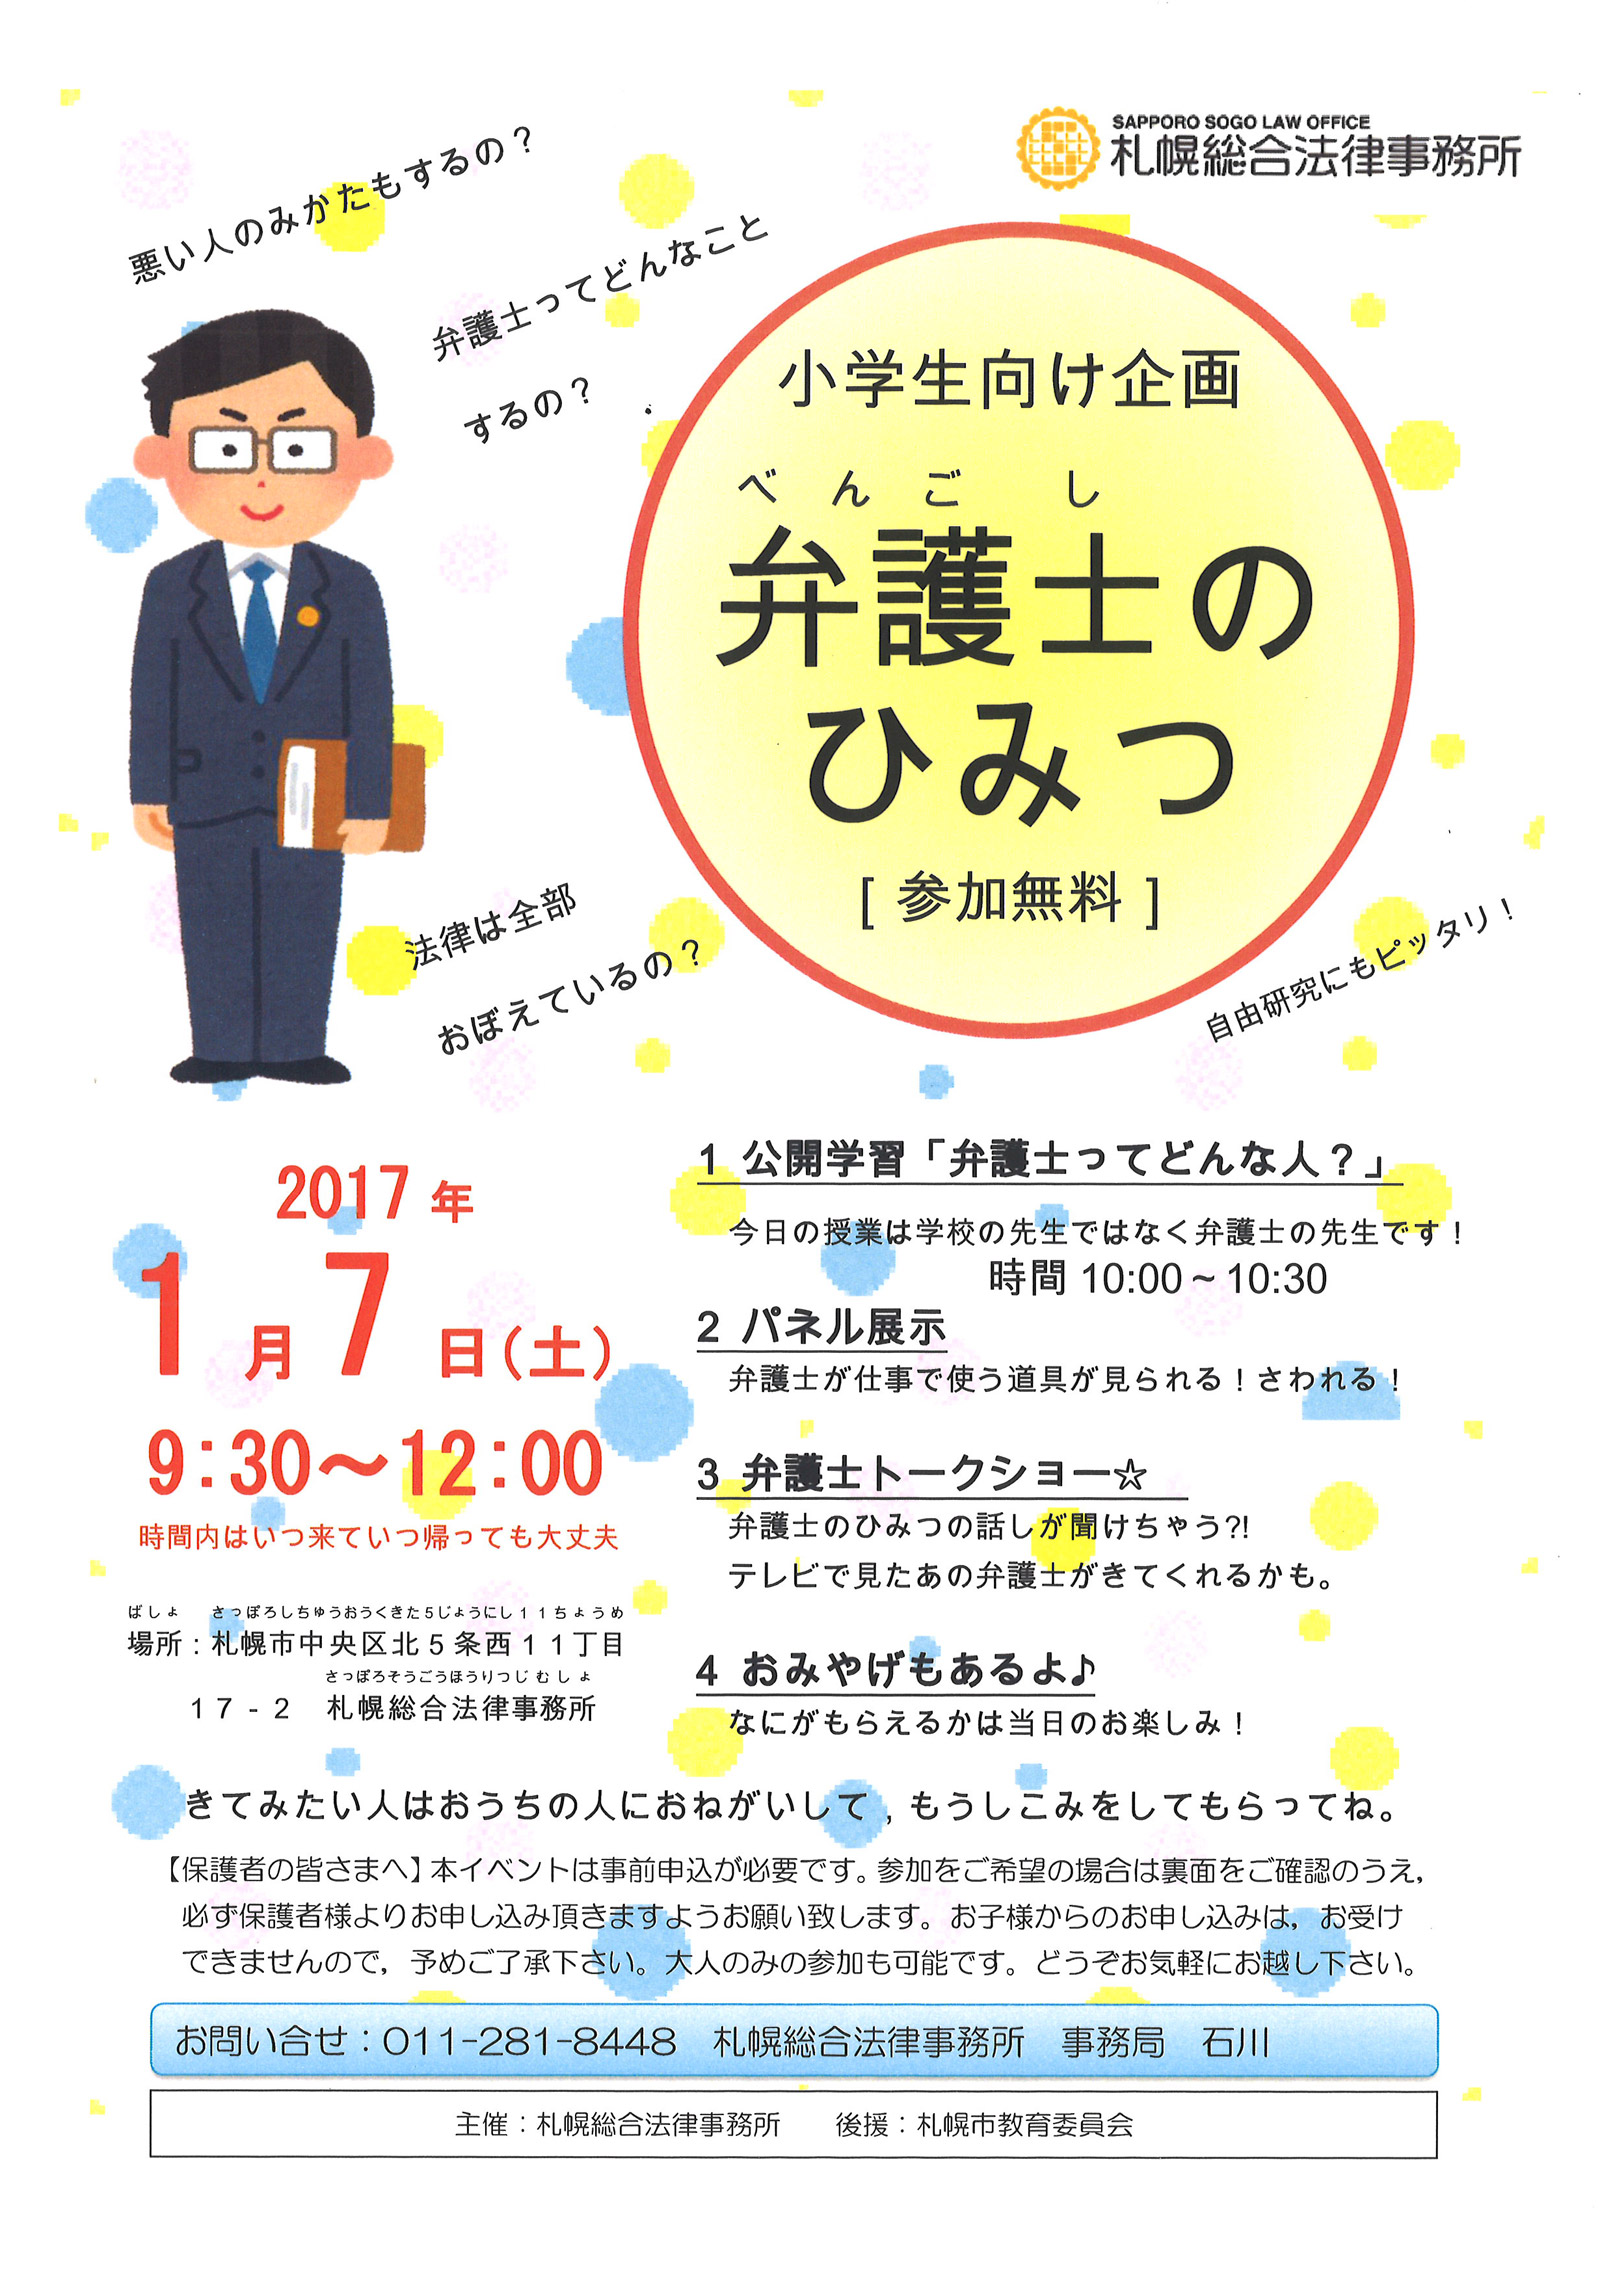 小学生向け企画 弁護士のひみつ 開催のお知らせ 事務所からのお知らせ 札幌総合法律事務所